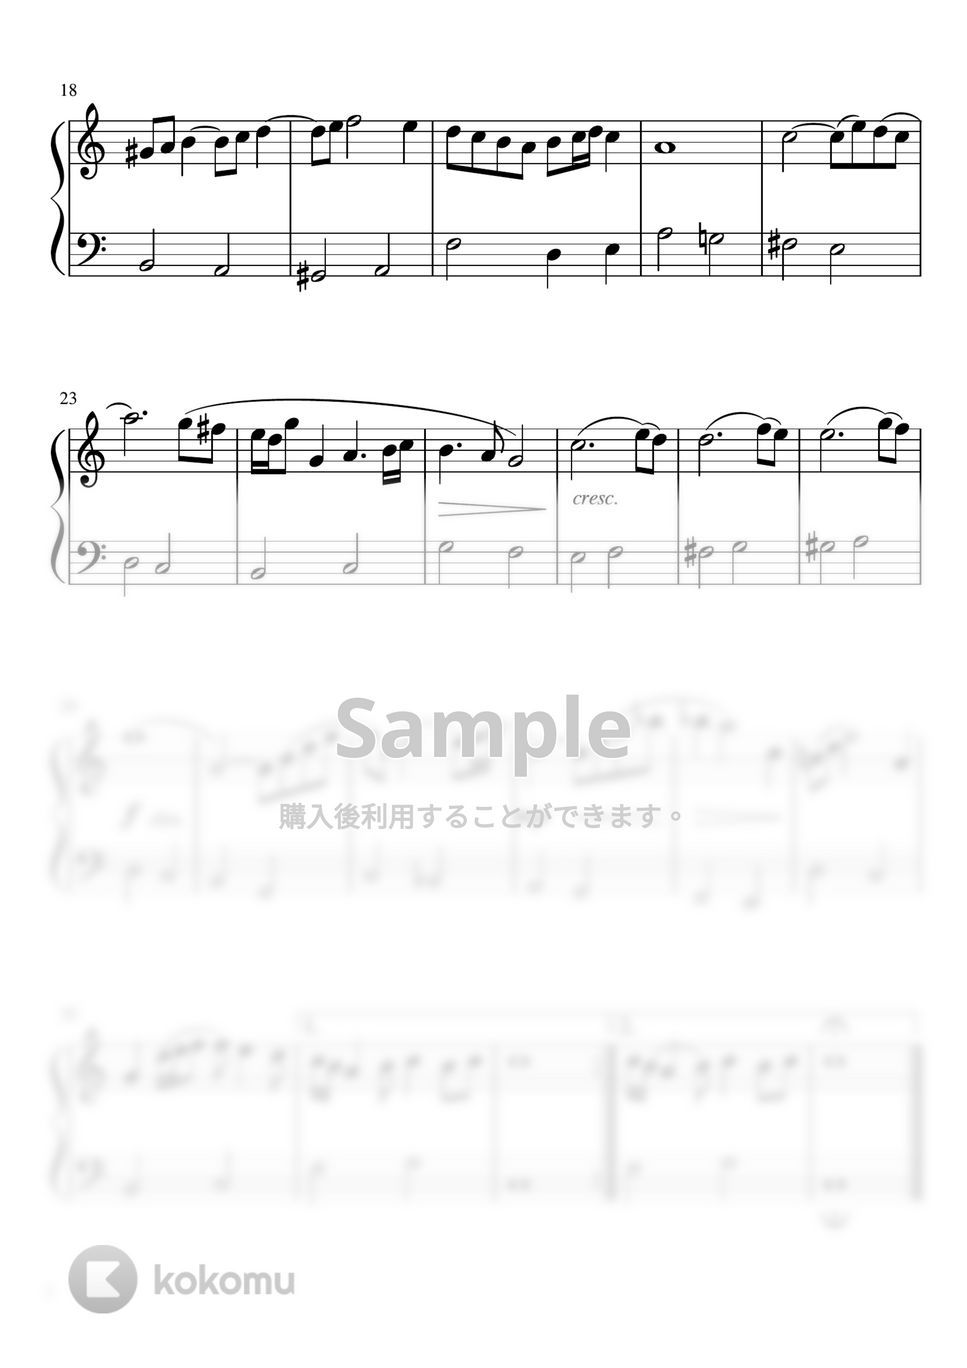 バッハ - G線上のアリア (Cdur・ピアノソロ初級) by pfkaori